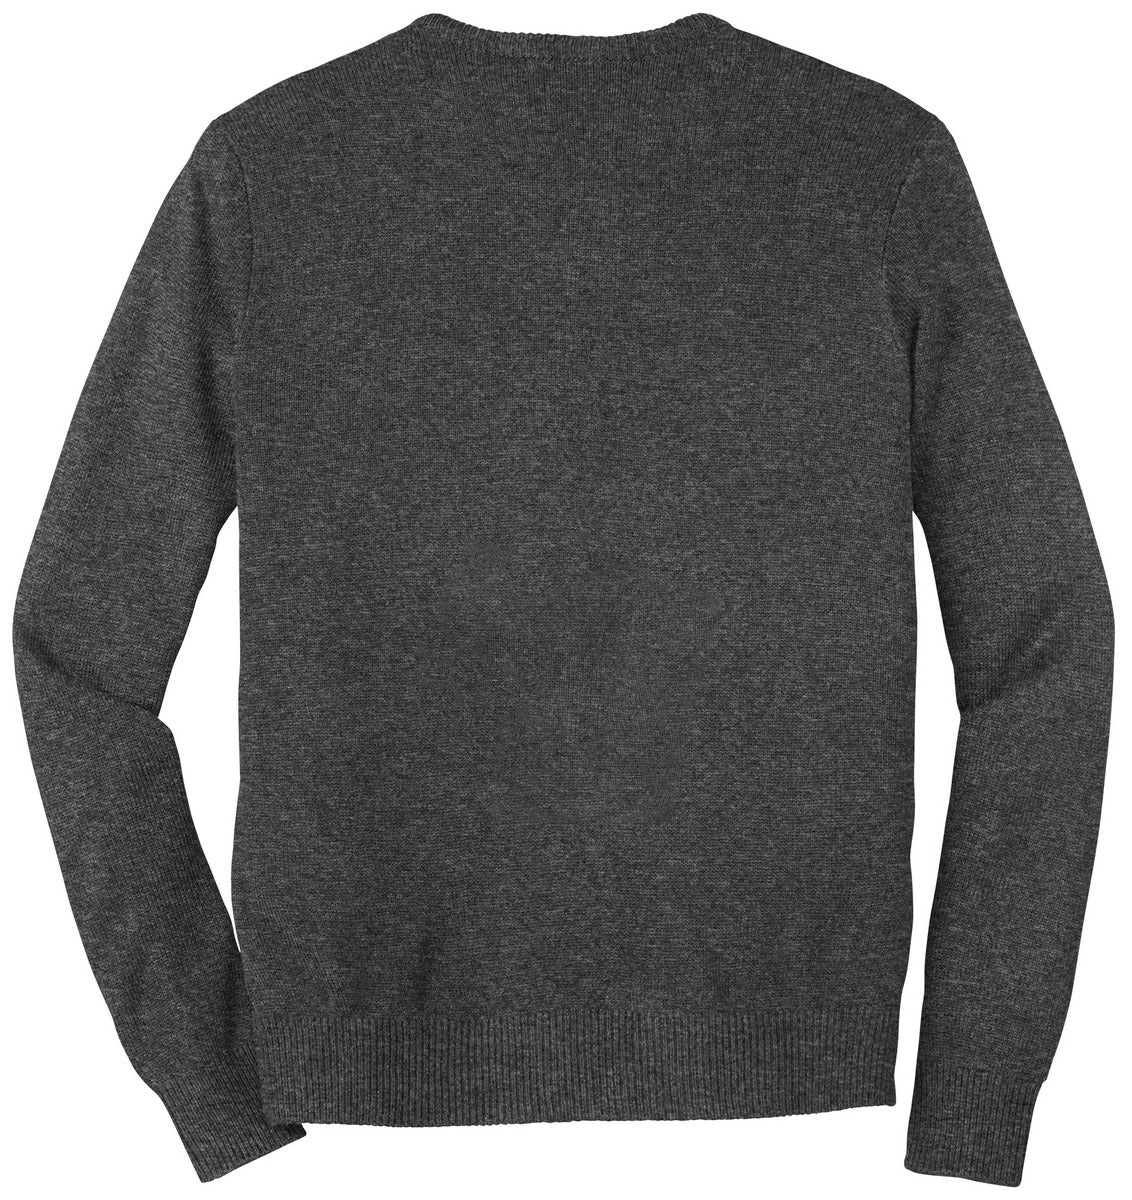 Mafoose Men's Value V-Neck Sweater Charcoal Grey-Back